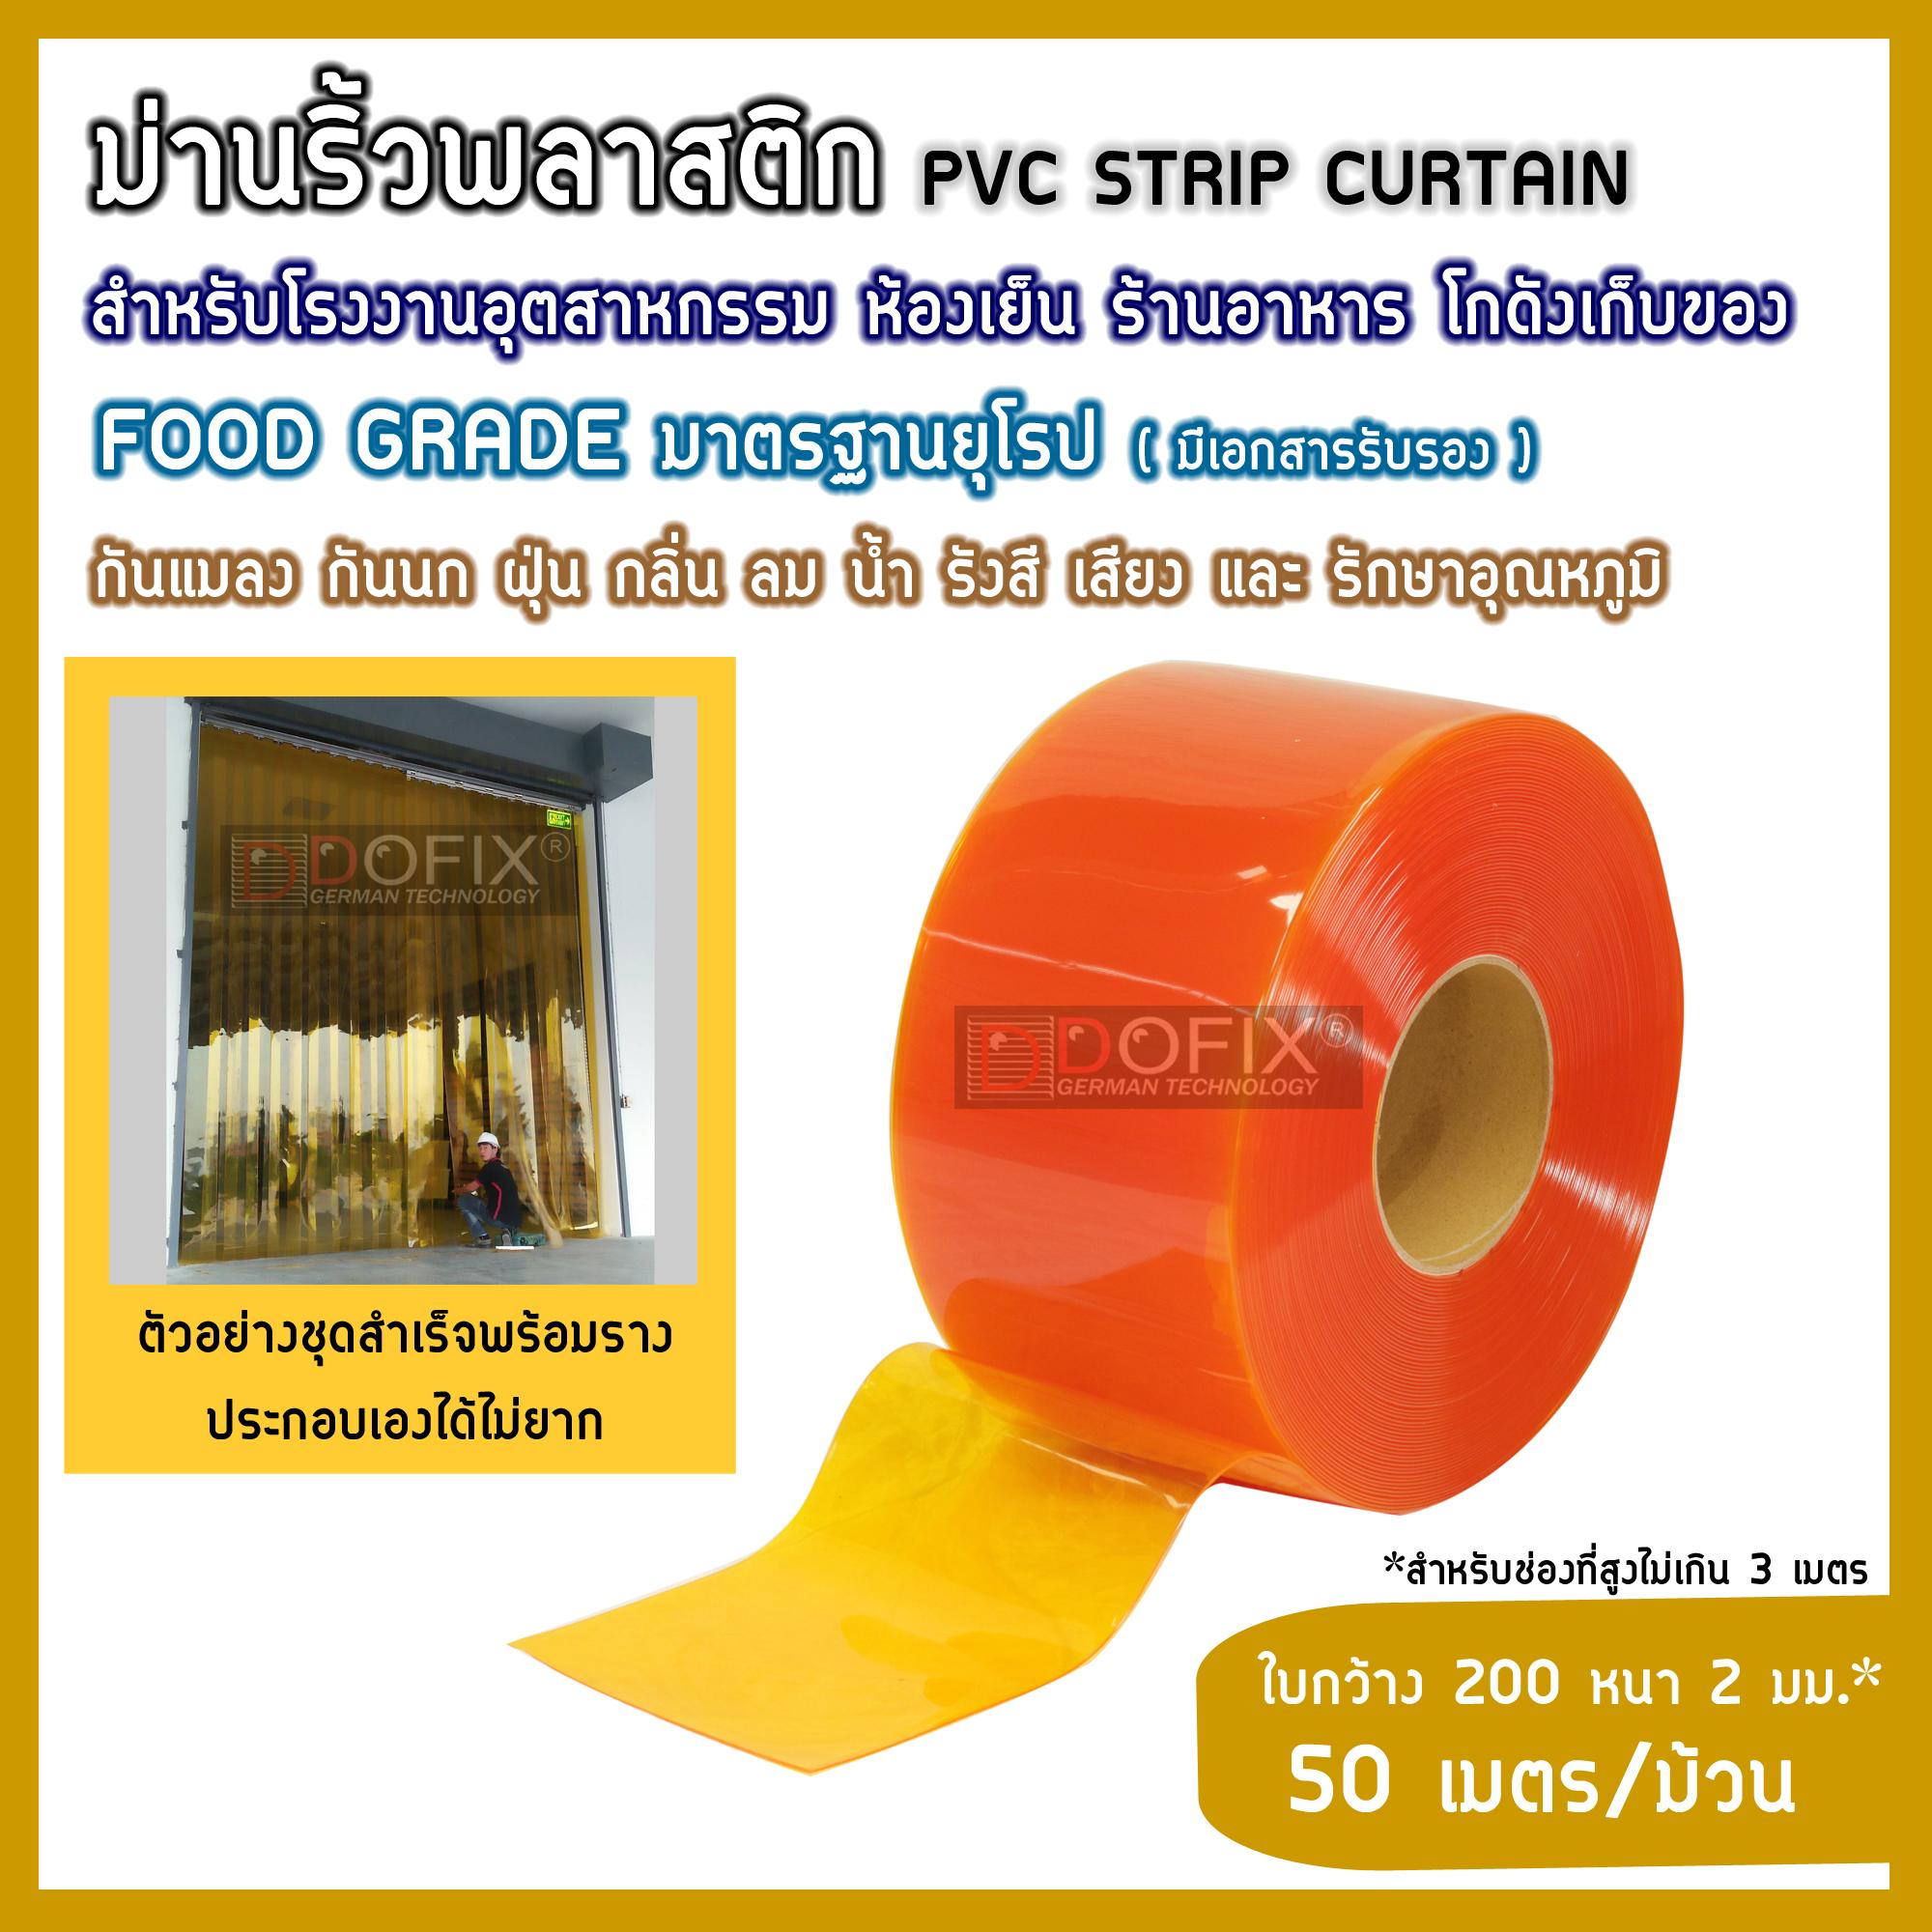 (ชนิดเหลืองส้มกันแมลง-ใบเรียบ ใบกว้าง200หนา2มม.) ม่านพลาสติก ม่านริ้ว ม่านกันฝุ่น ม่านกันแมลง ม่านโรงงานโกดัง ม่านห้องเย็น PVC Strip Curtain ปลอดสารปนเปื้อน food grade มาตรฐานยุโรป รับรองโดย TUV Rheinland ส่งฟรีทั่วประเทศ แบรนด์ DOFIX (50เมตร/ม้วน)